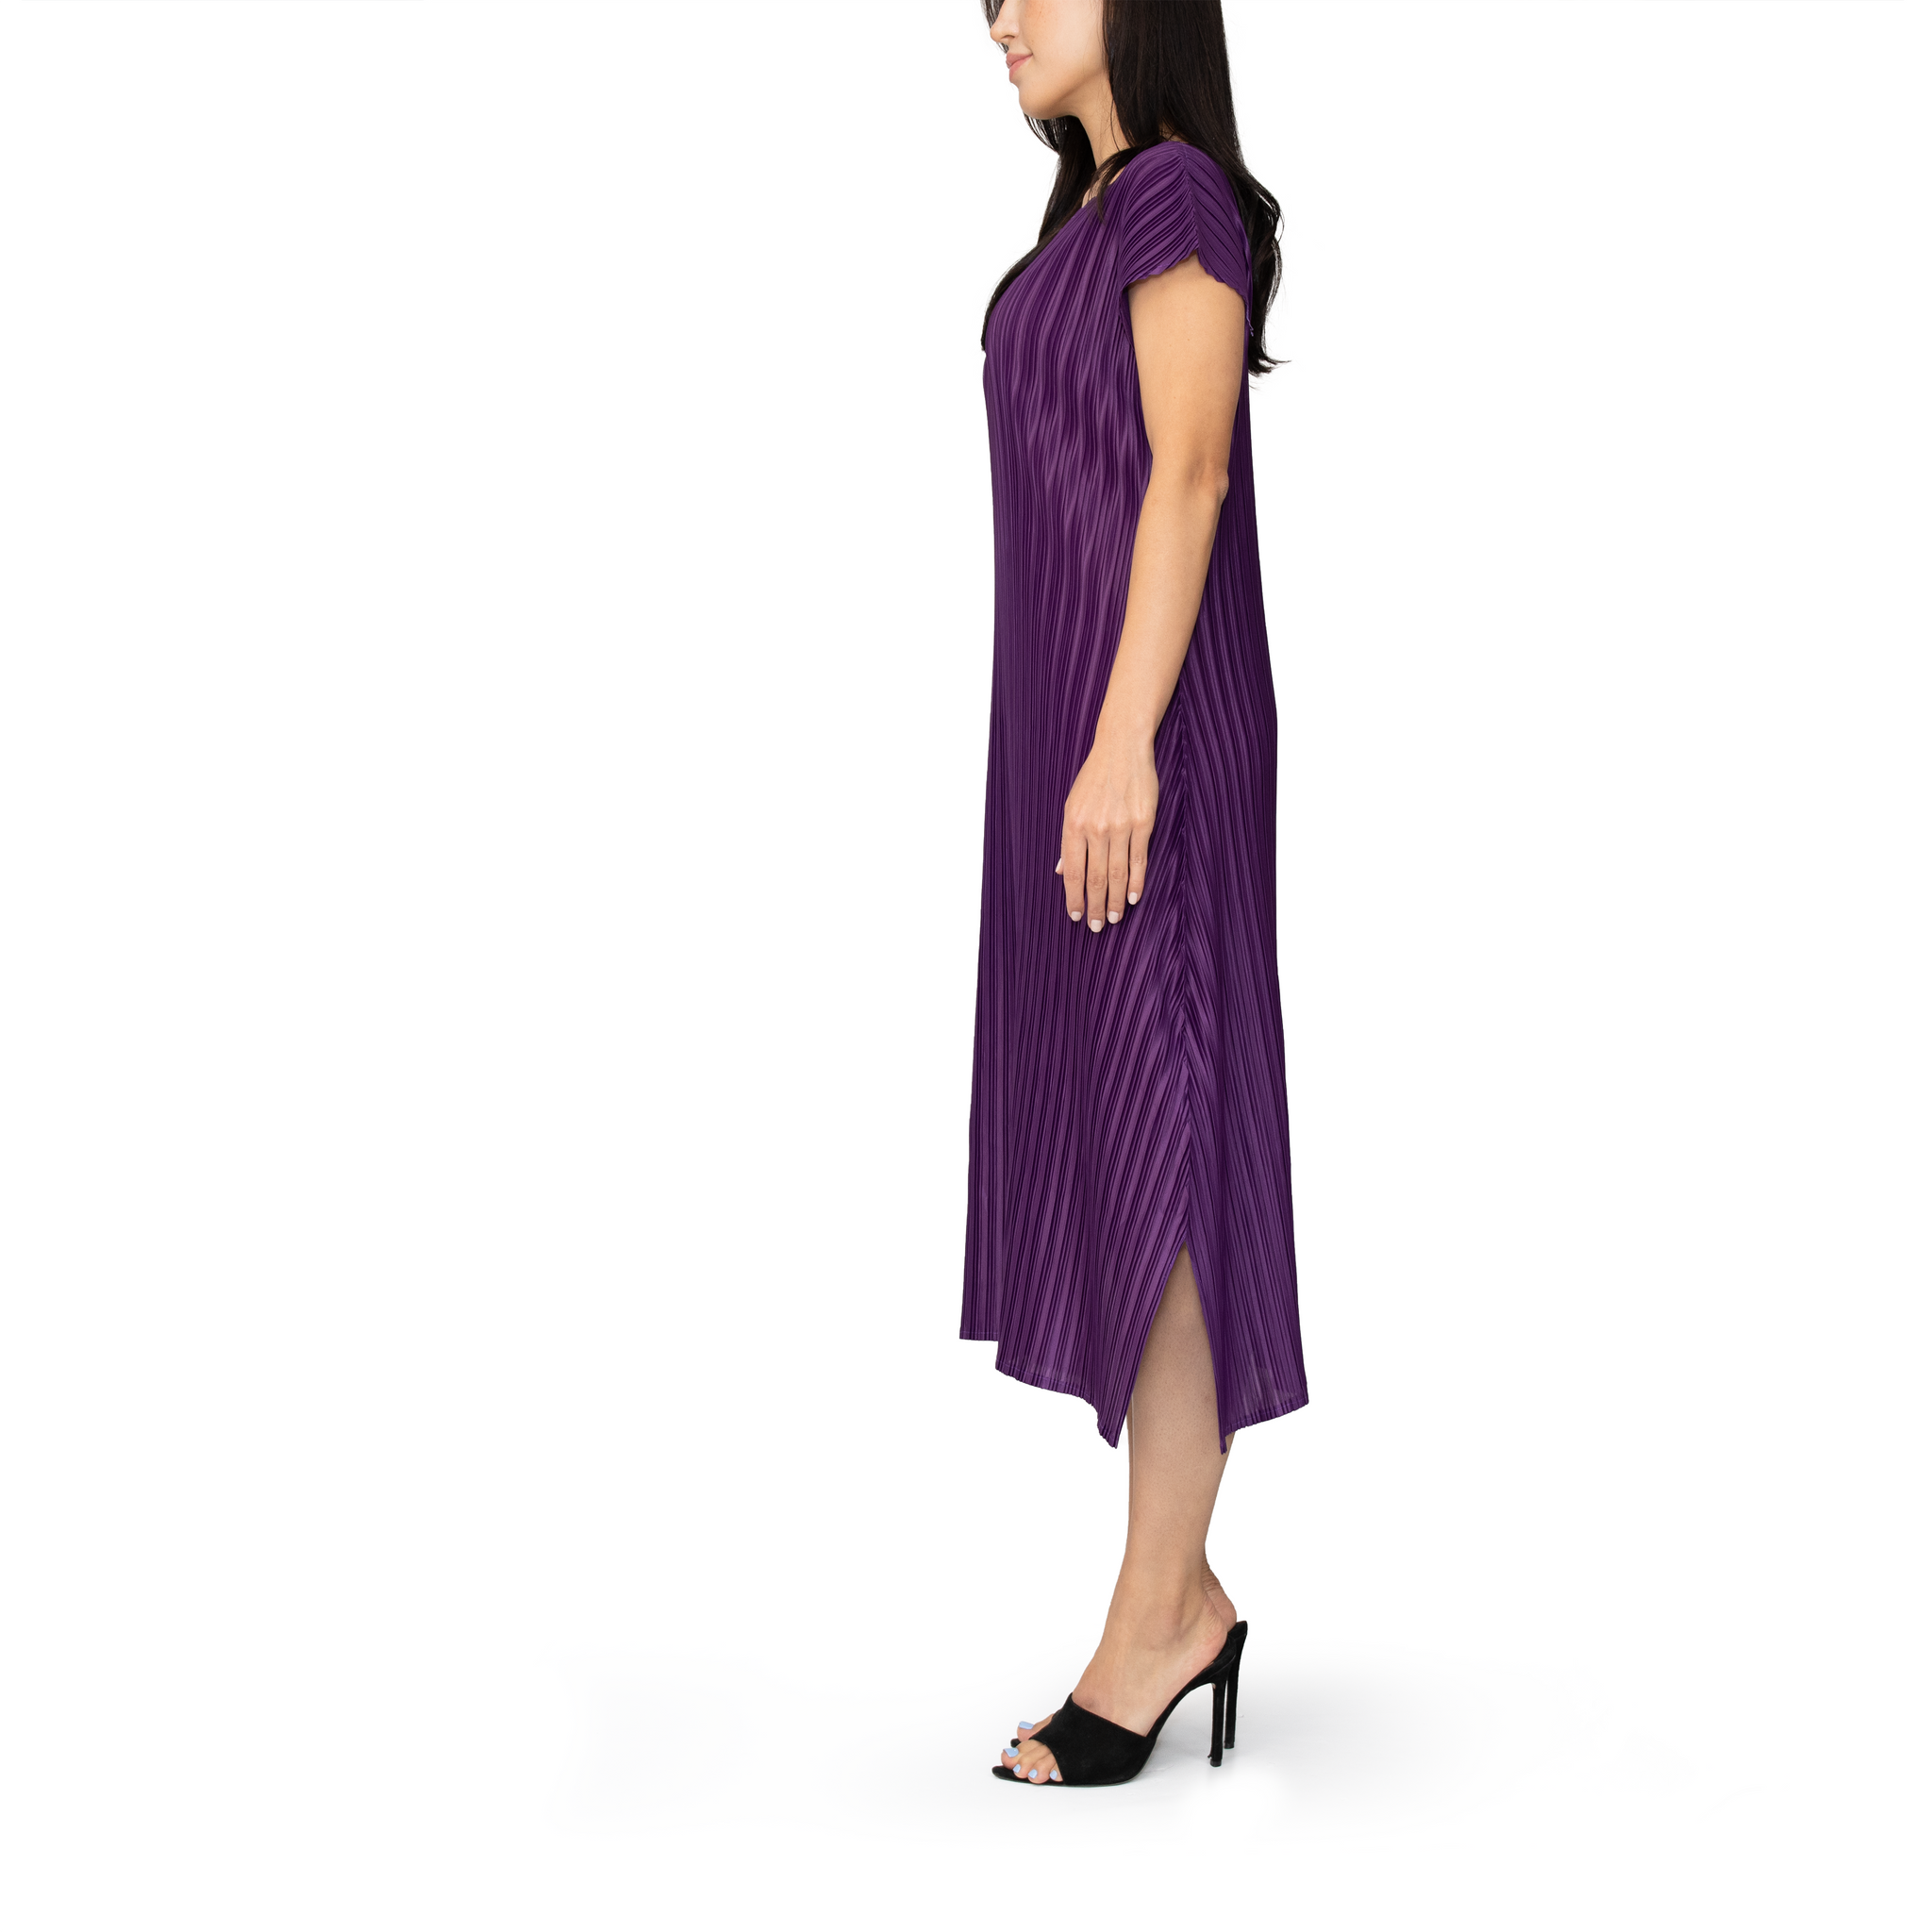 Pleated short-sleeve midi dress